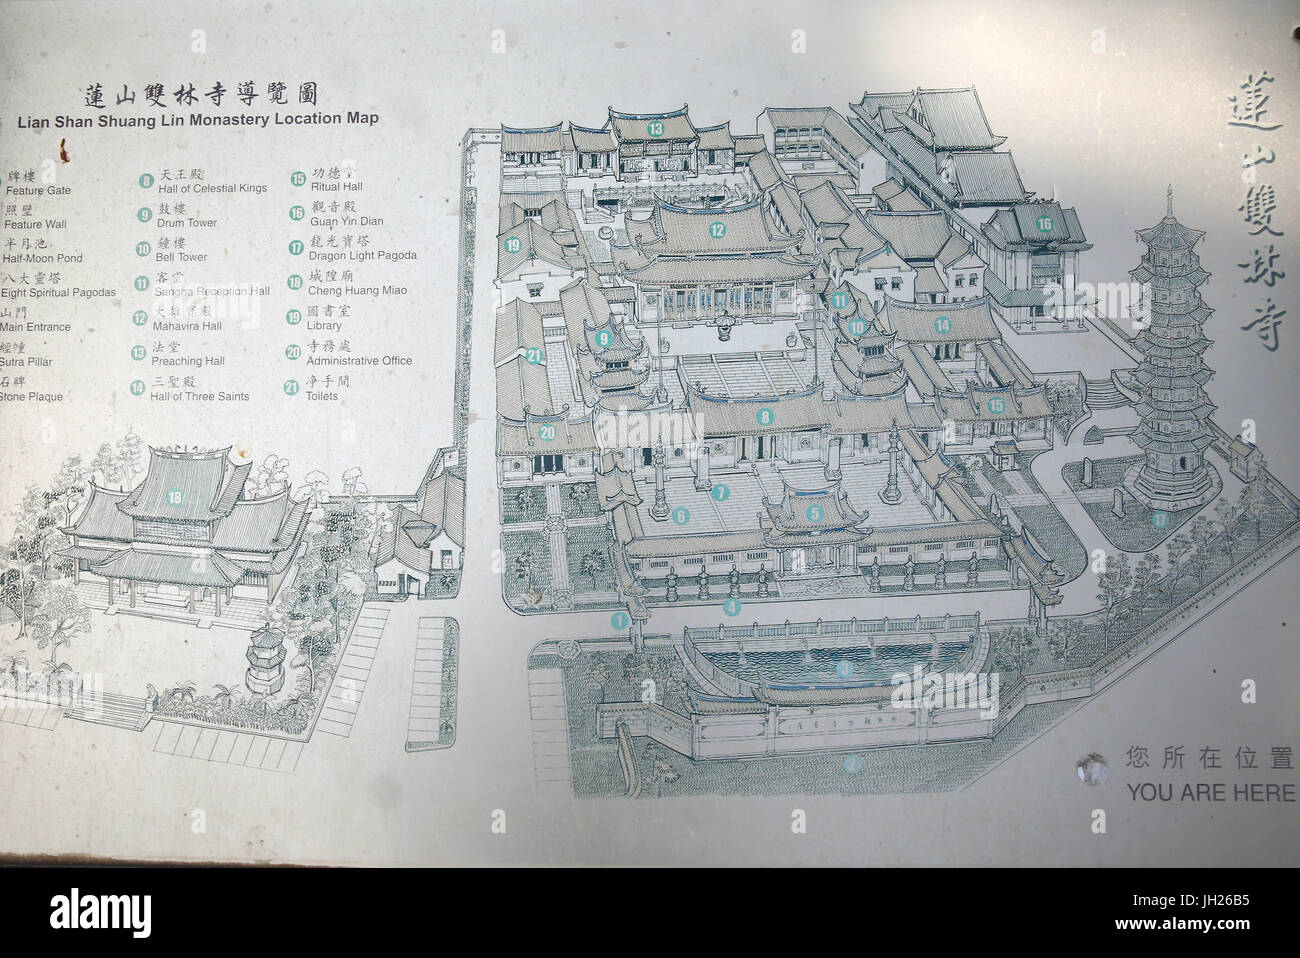 Lian Shan Shuang Lin Monasterio. Mapa. Singapur. Foto de stock